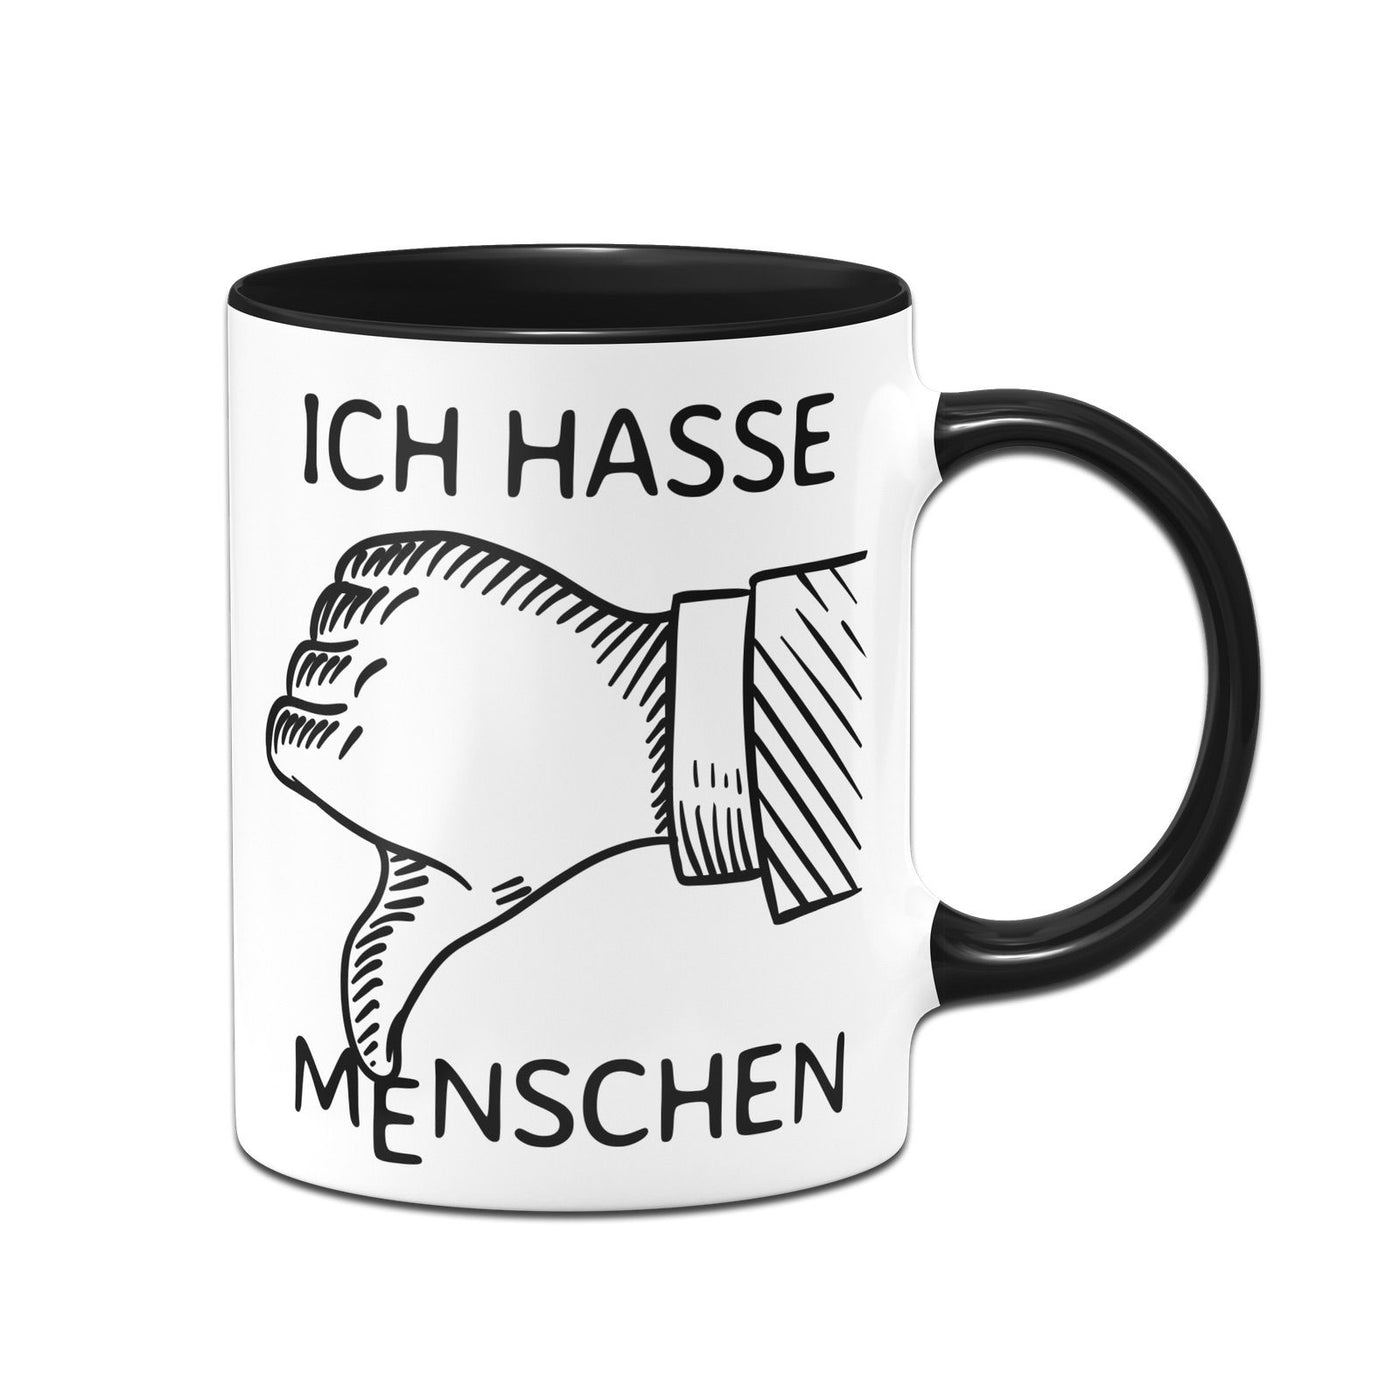 Bild: Tasse - unlike Ich hasse Menschen Geschenkidee